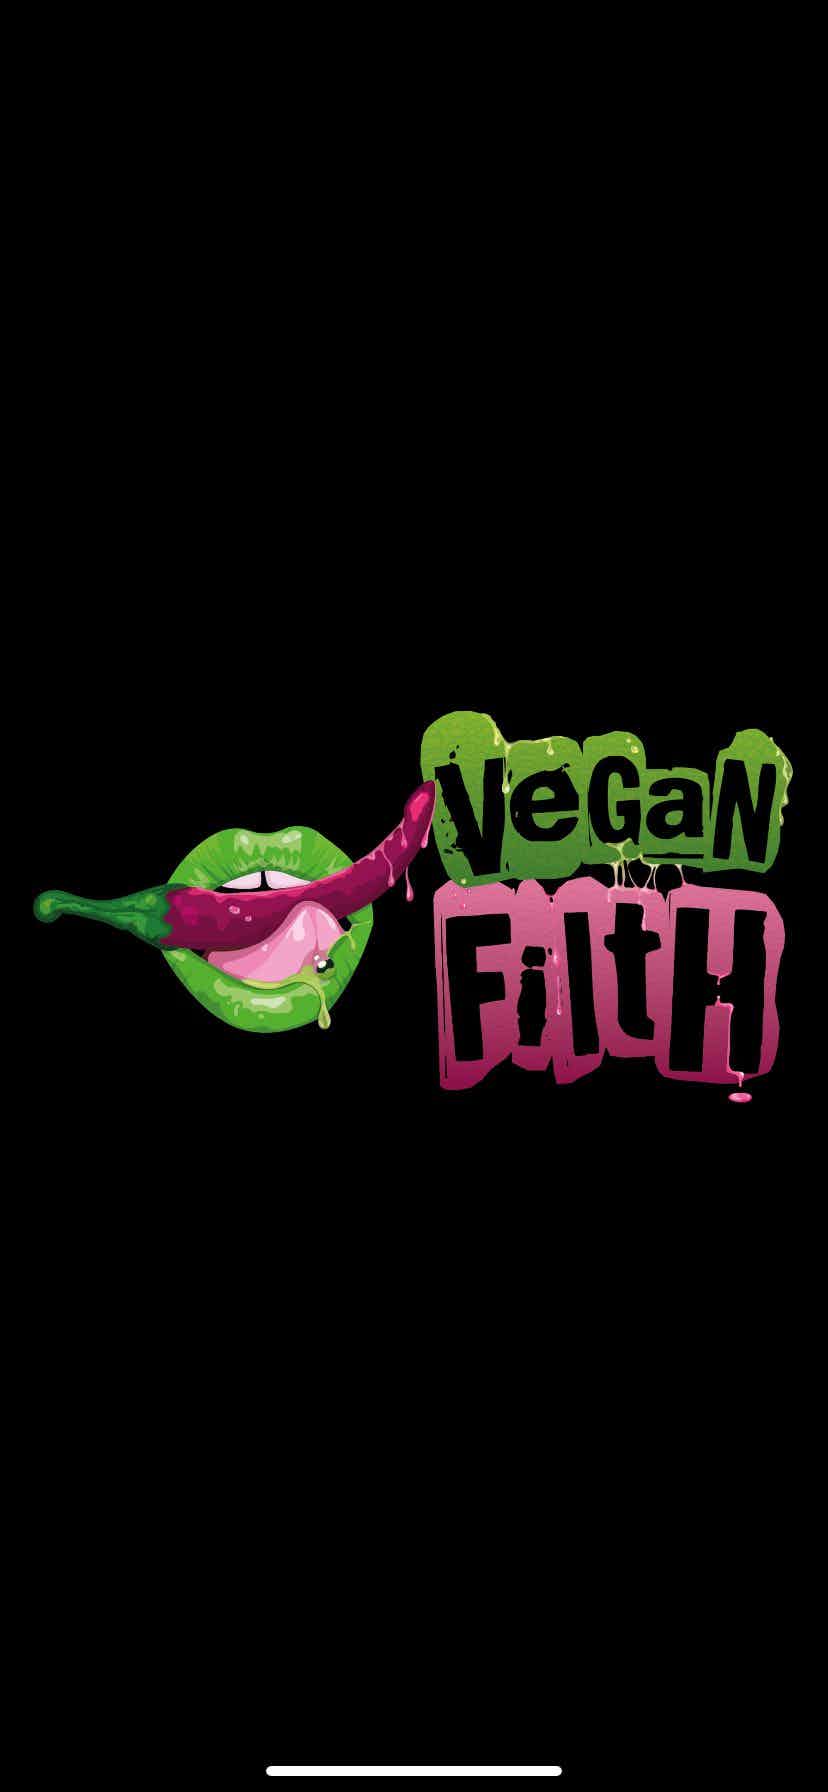 Hero image for supplier Vegan Filth